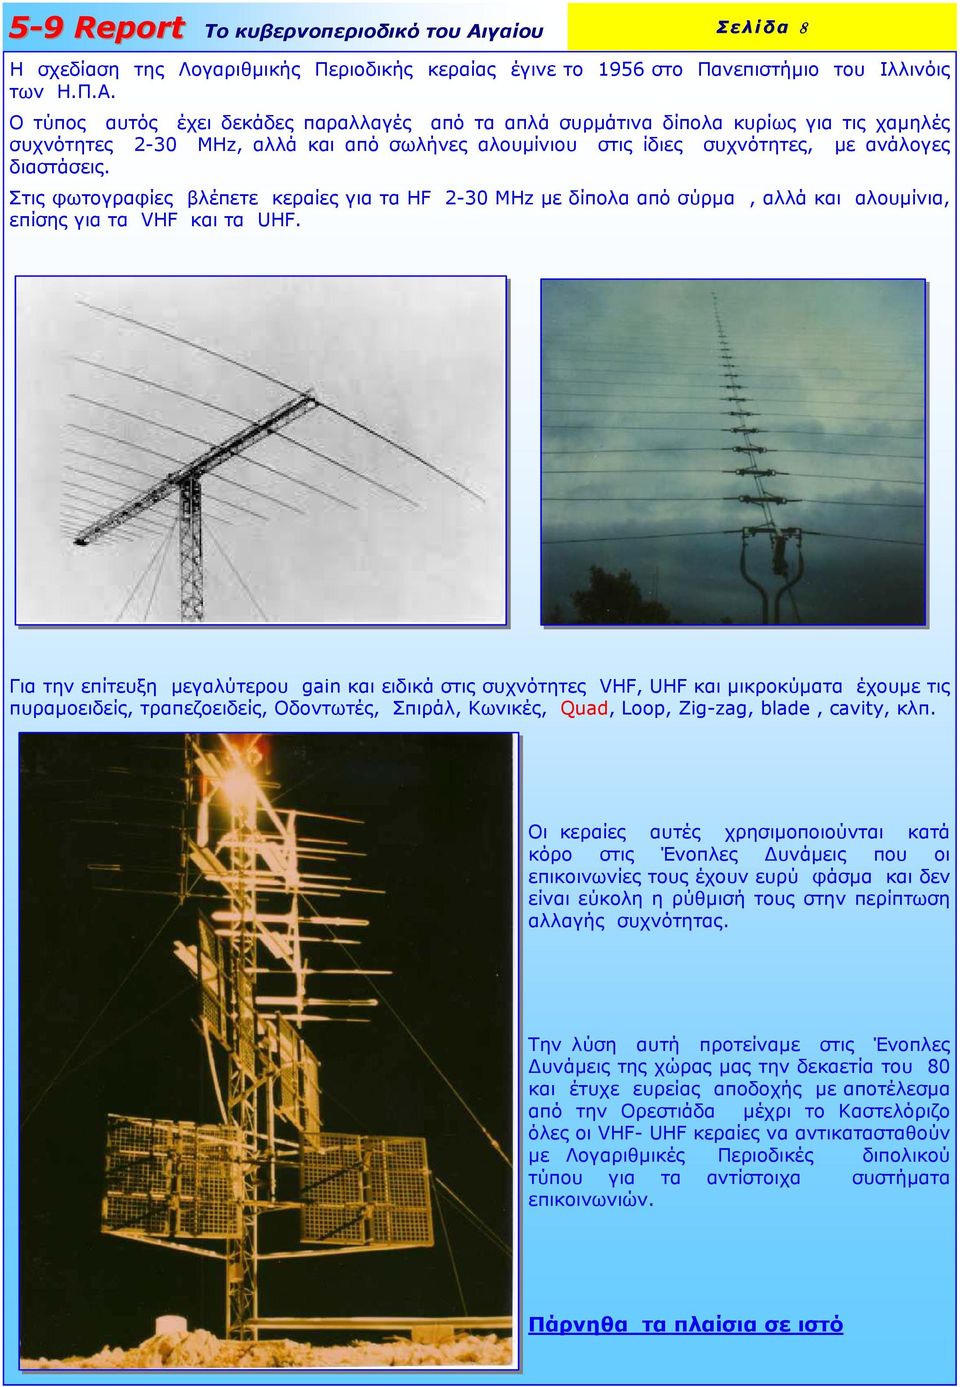 Στις φωτογραφίες βλέπετε κεραίες για τα HF 2-30 MHz µε δίπολα από σύρµα, αλλά και αλουµίνια, επίσης για τα VHF και τα UHF.